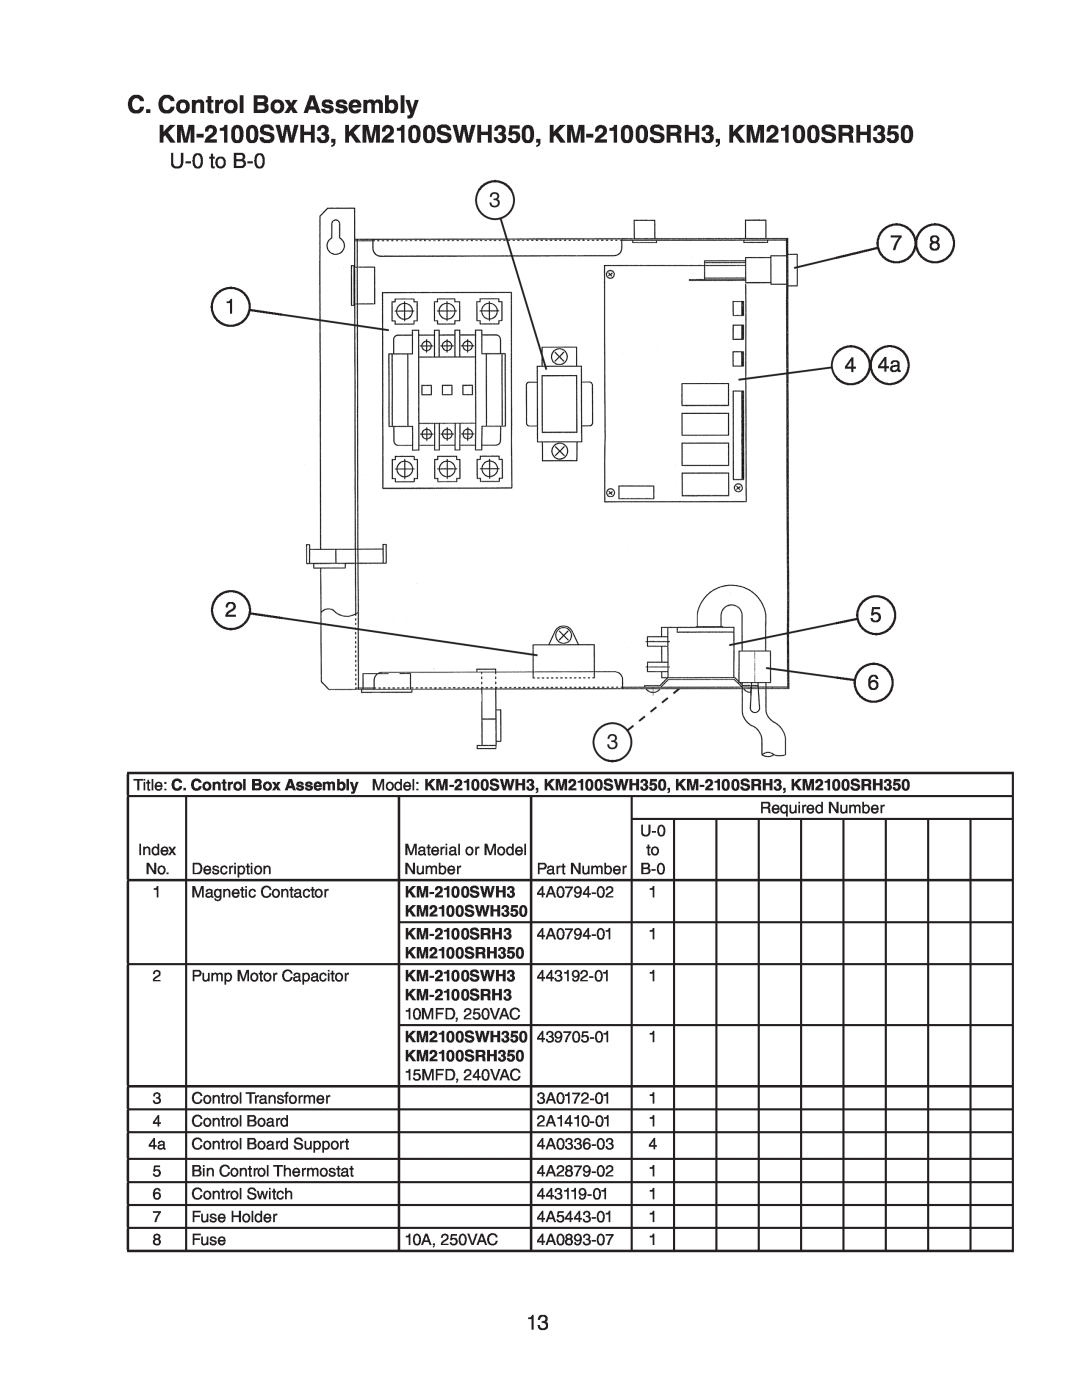 Hoshizaki manual C. Control Box Assembly, KM-2100SWH3, KM2100SWH350, KM-2100SRH3, KM2100SRH350 